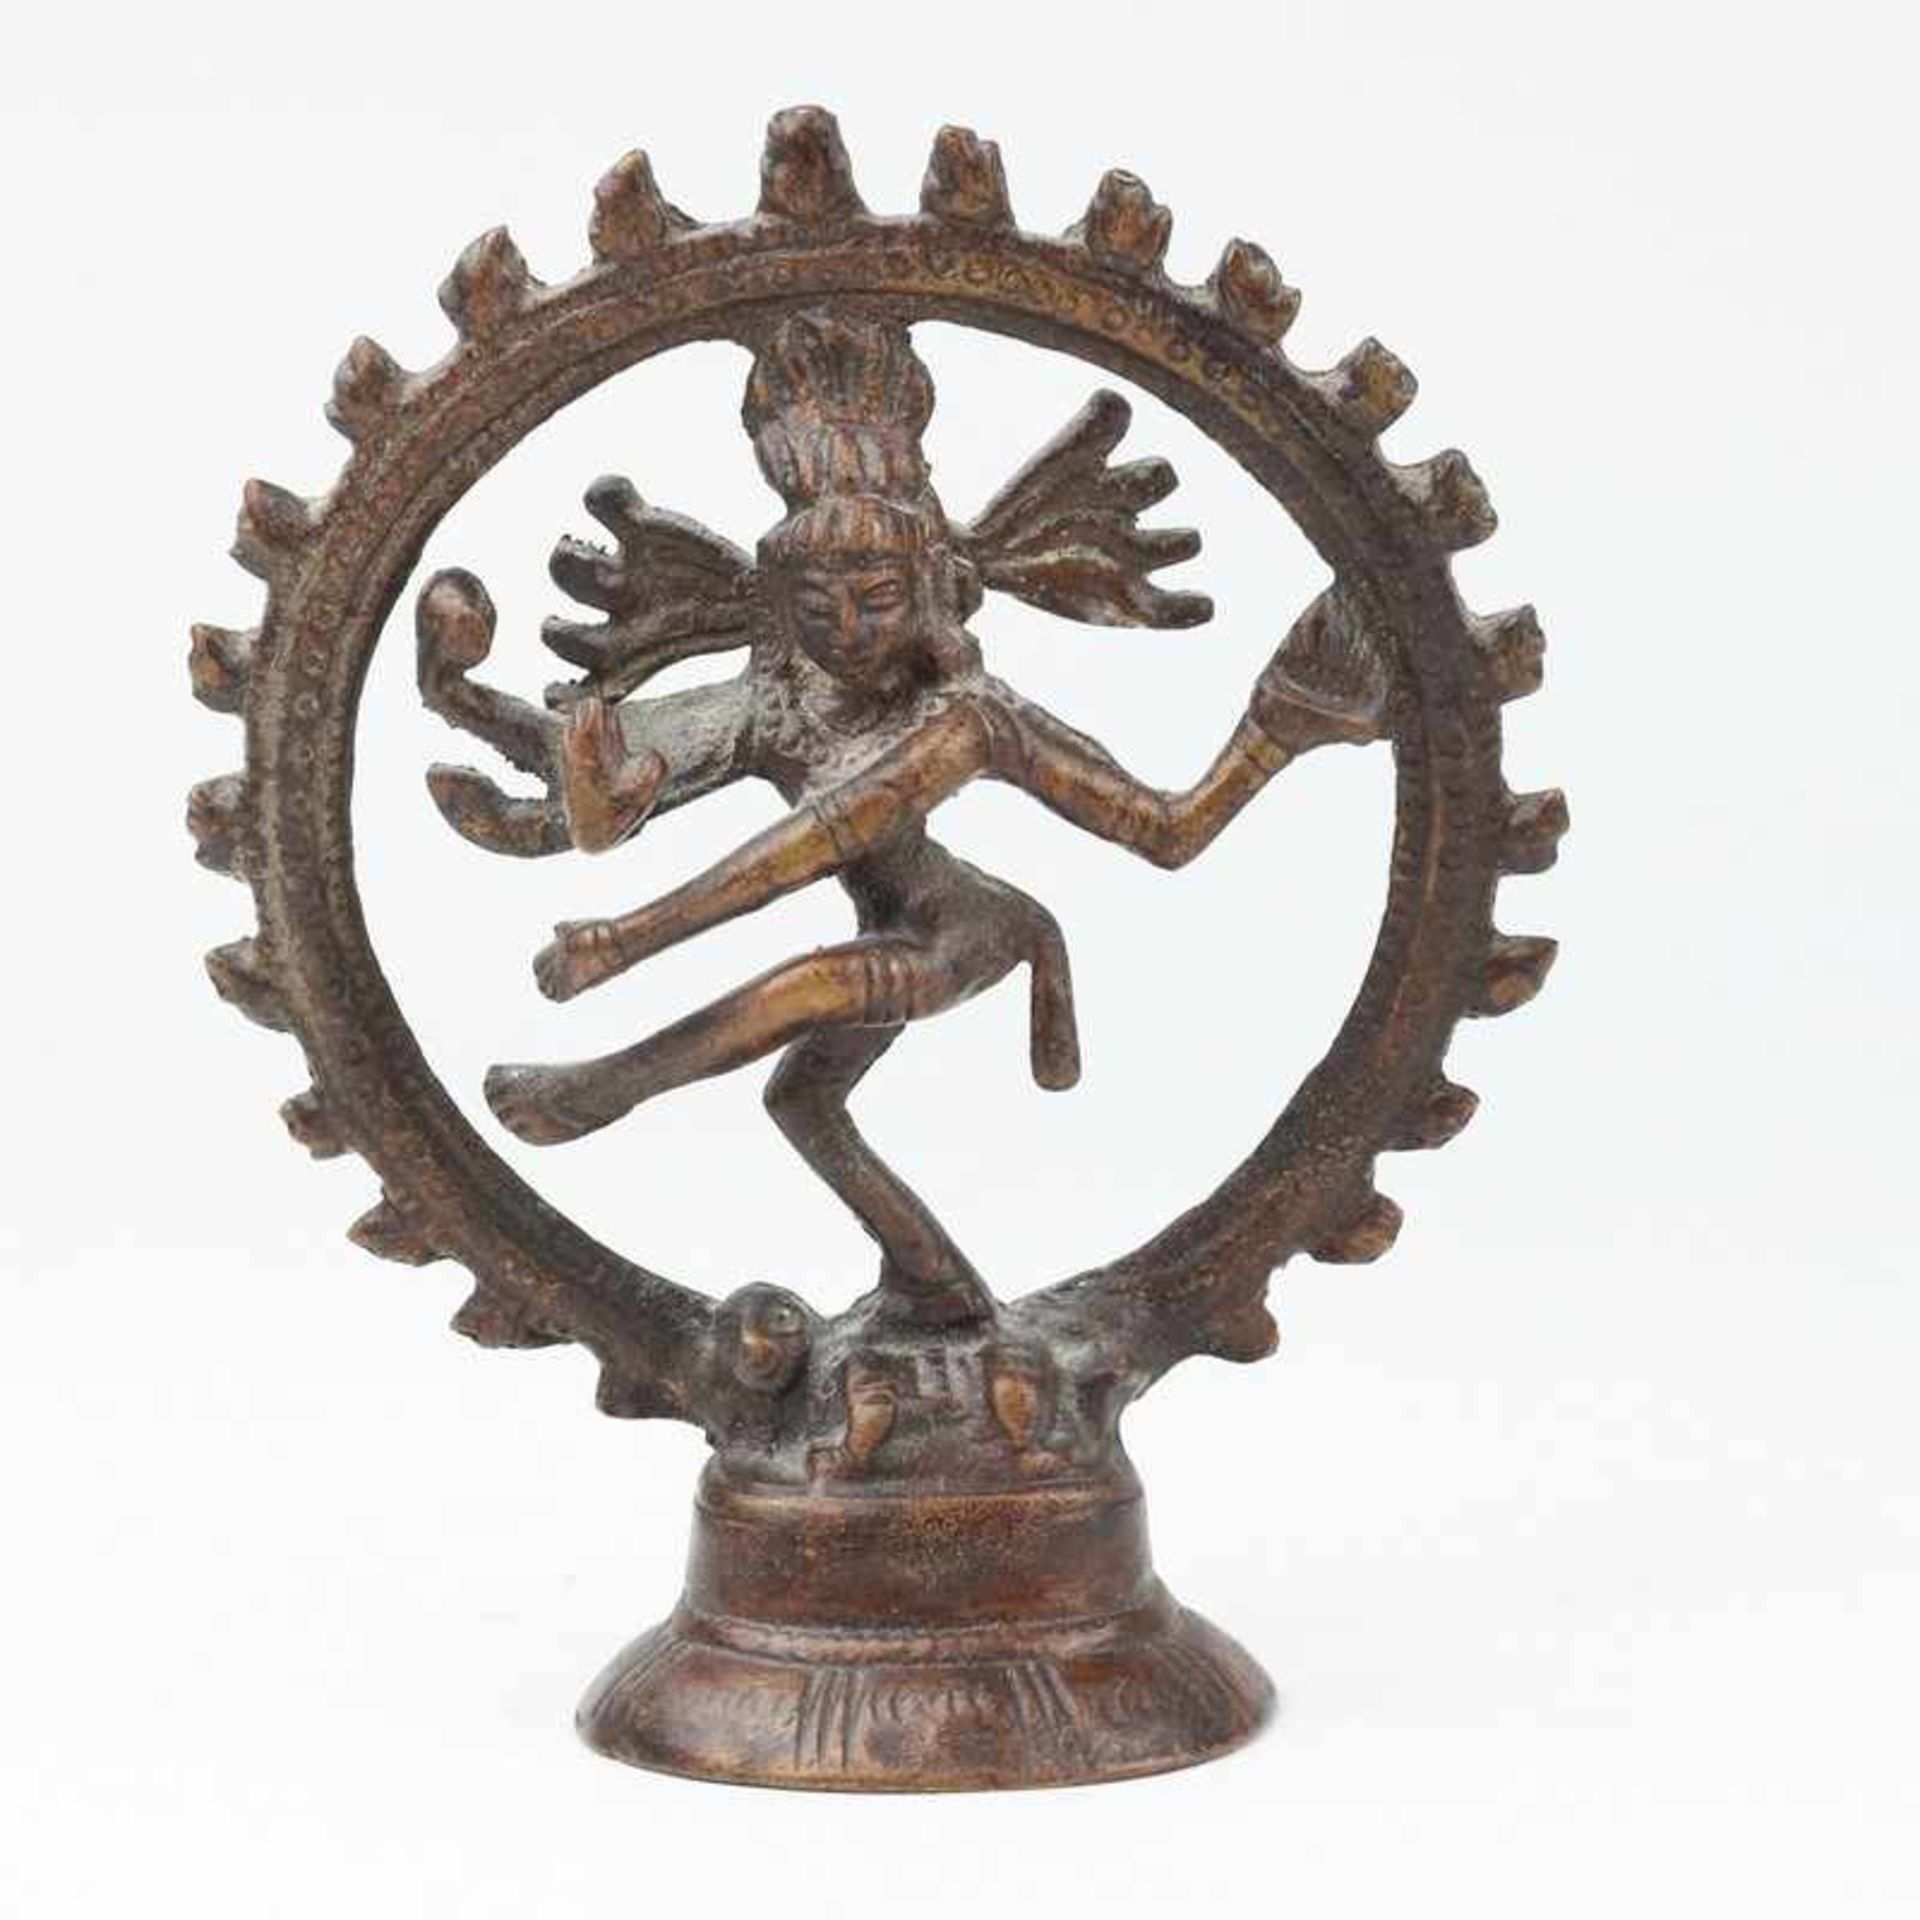 Shiva um 1900, Bronze, patiniert, hinduistische Gottheit, Shiva als Nataraja dargestellt, im